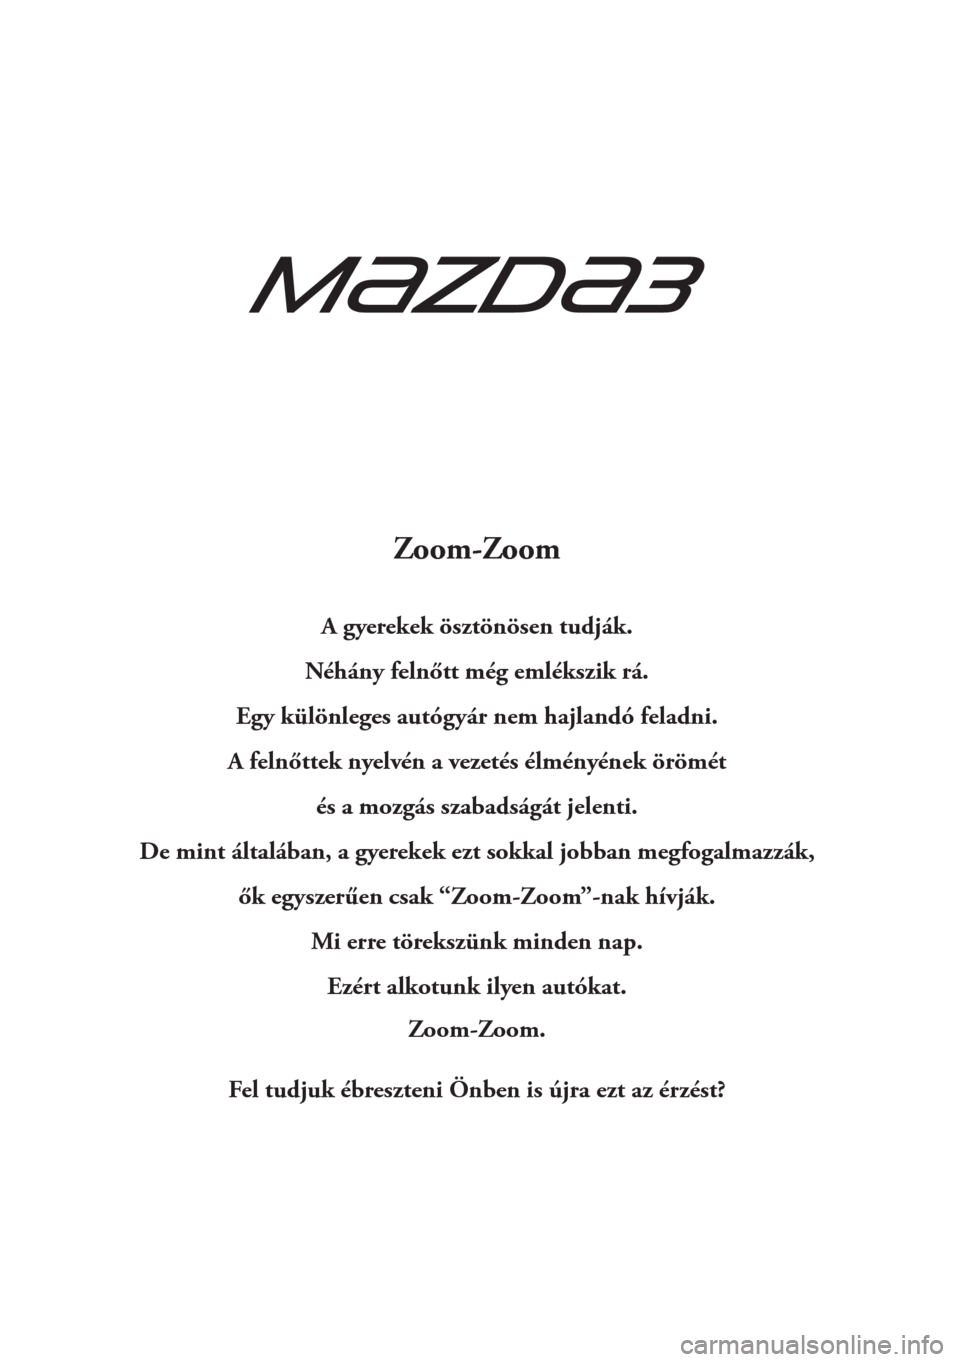 MAZDA MODEL 3 HATCHBACK 2015  Kezelési útmutató (in Hungarian) Zoom-Zoom
A gyerekek ösztönösen tudják.
Néhány felnőtt még emlékszik rá.
Egy különleges autógyár nem hajlandó feladni.
A felnőttek nyelvén a vezetés élményének örömét
és a moz